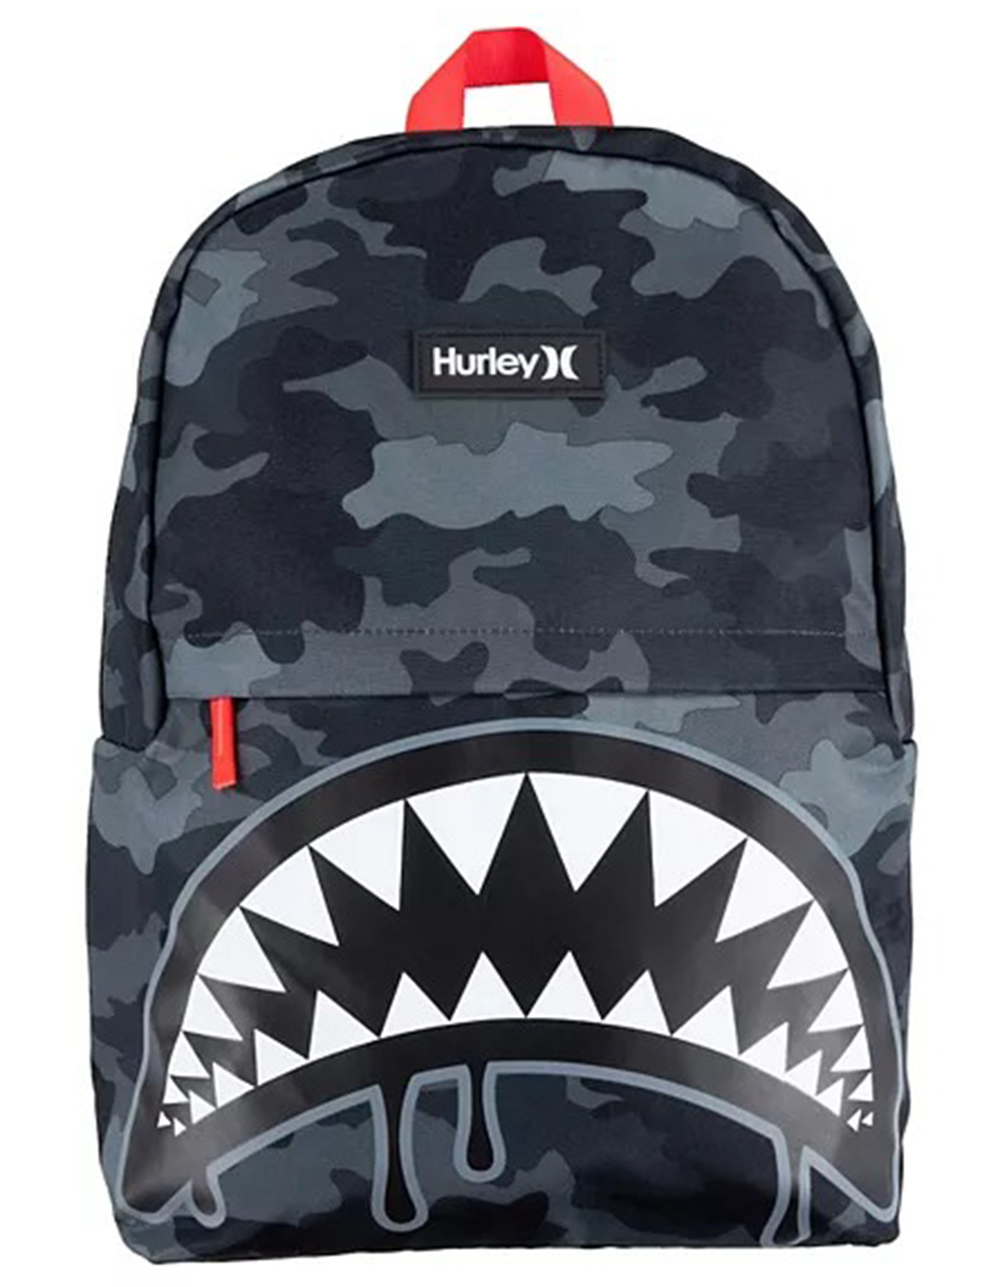 YLX Shark Bite Backpack